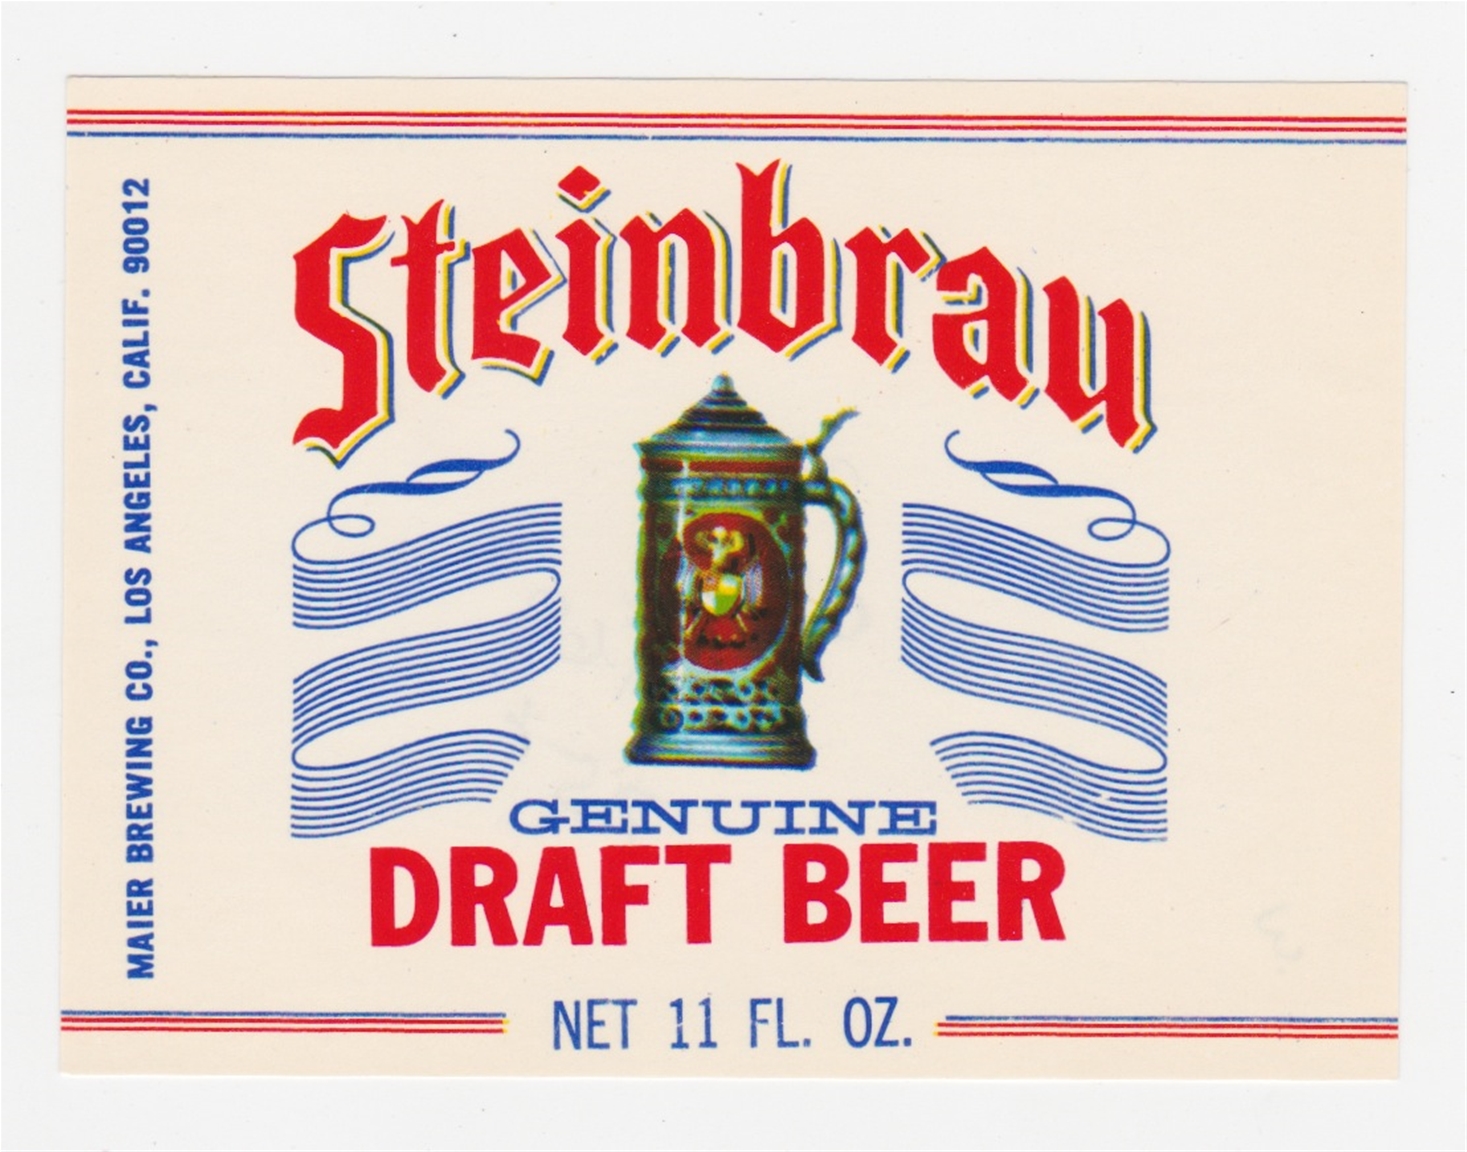 Steinbrau Genuine Draft Beer Label